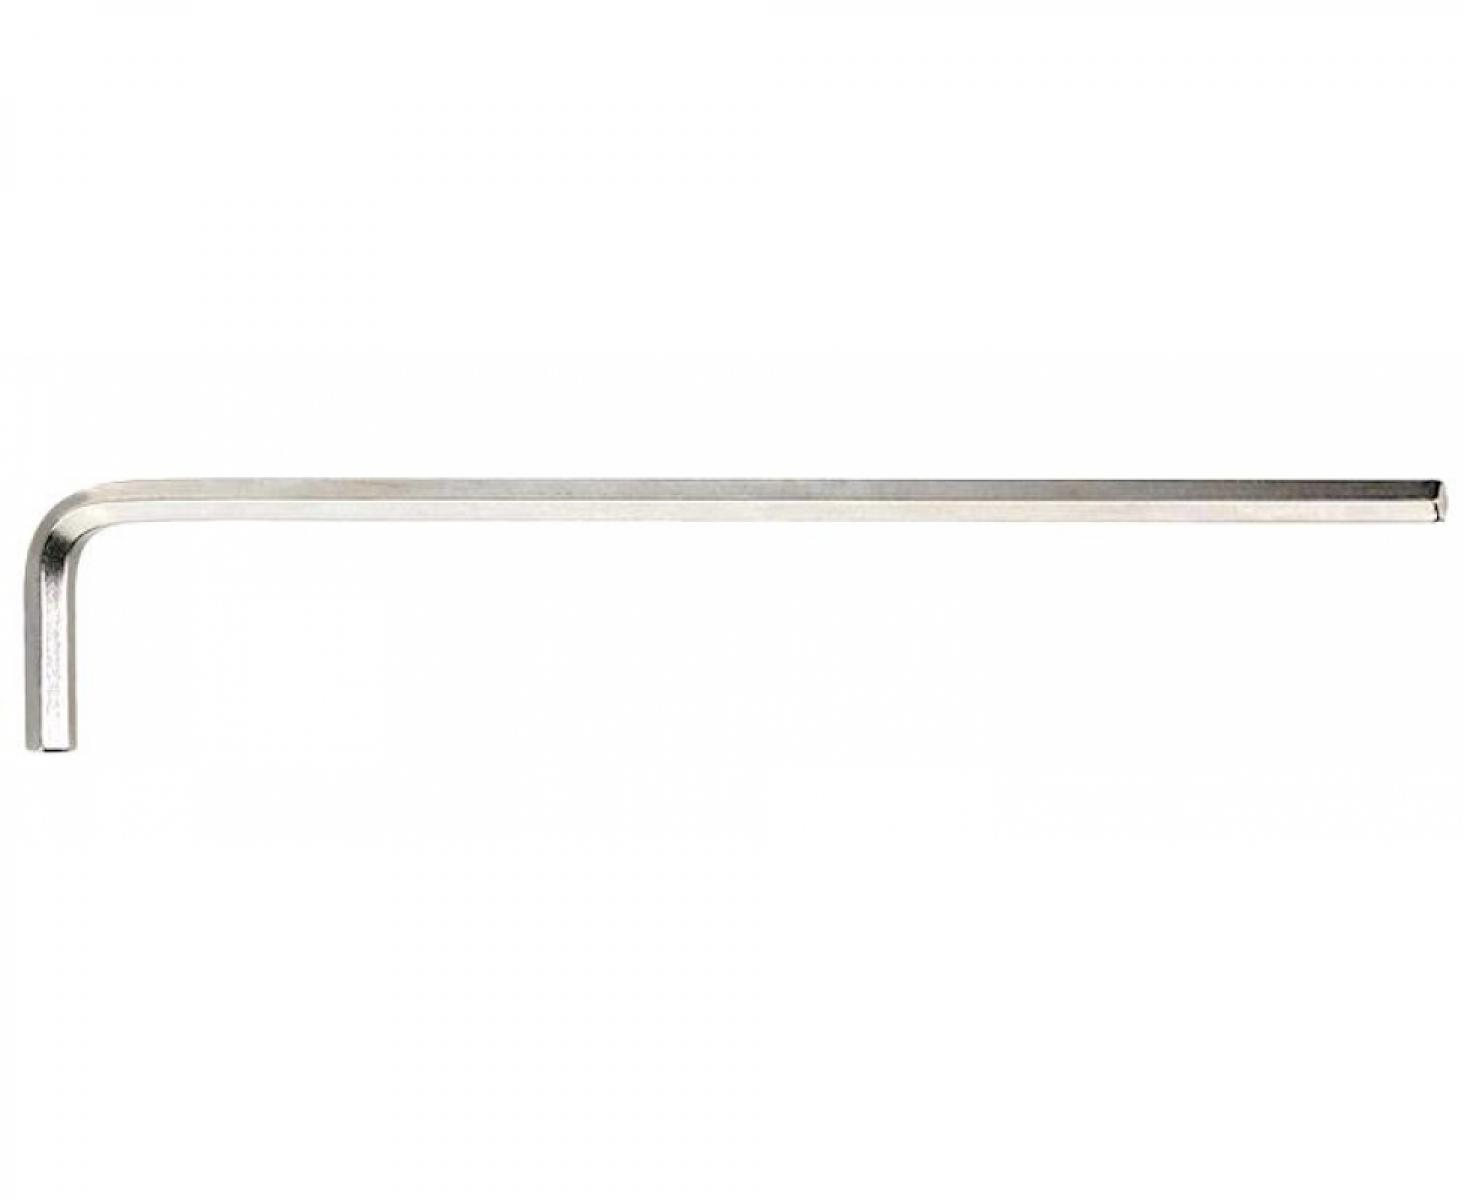 Штифтовый ключ HEX 2.5 мм длинный, метрический, никелированный 10765 Stahlwille 43210015